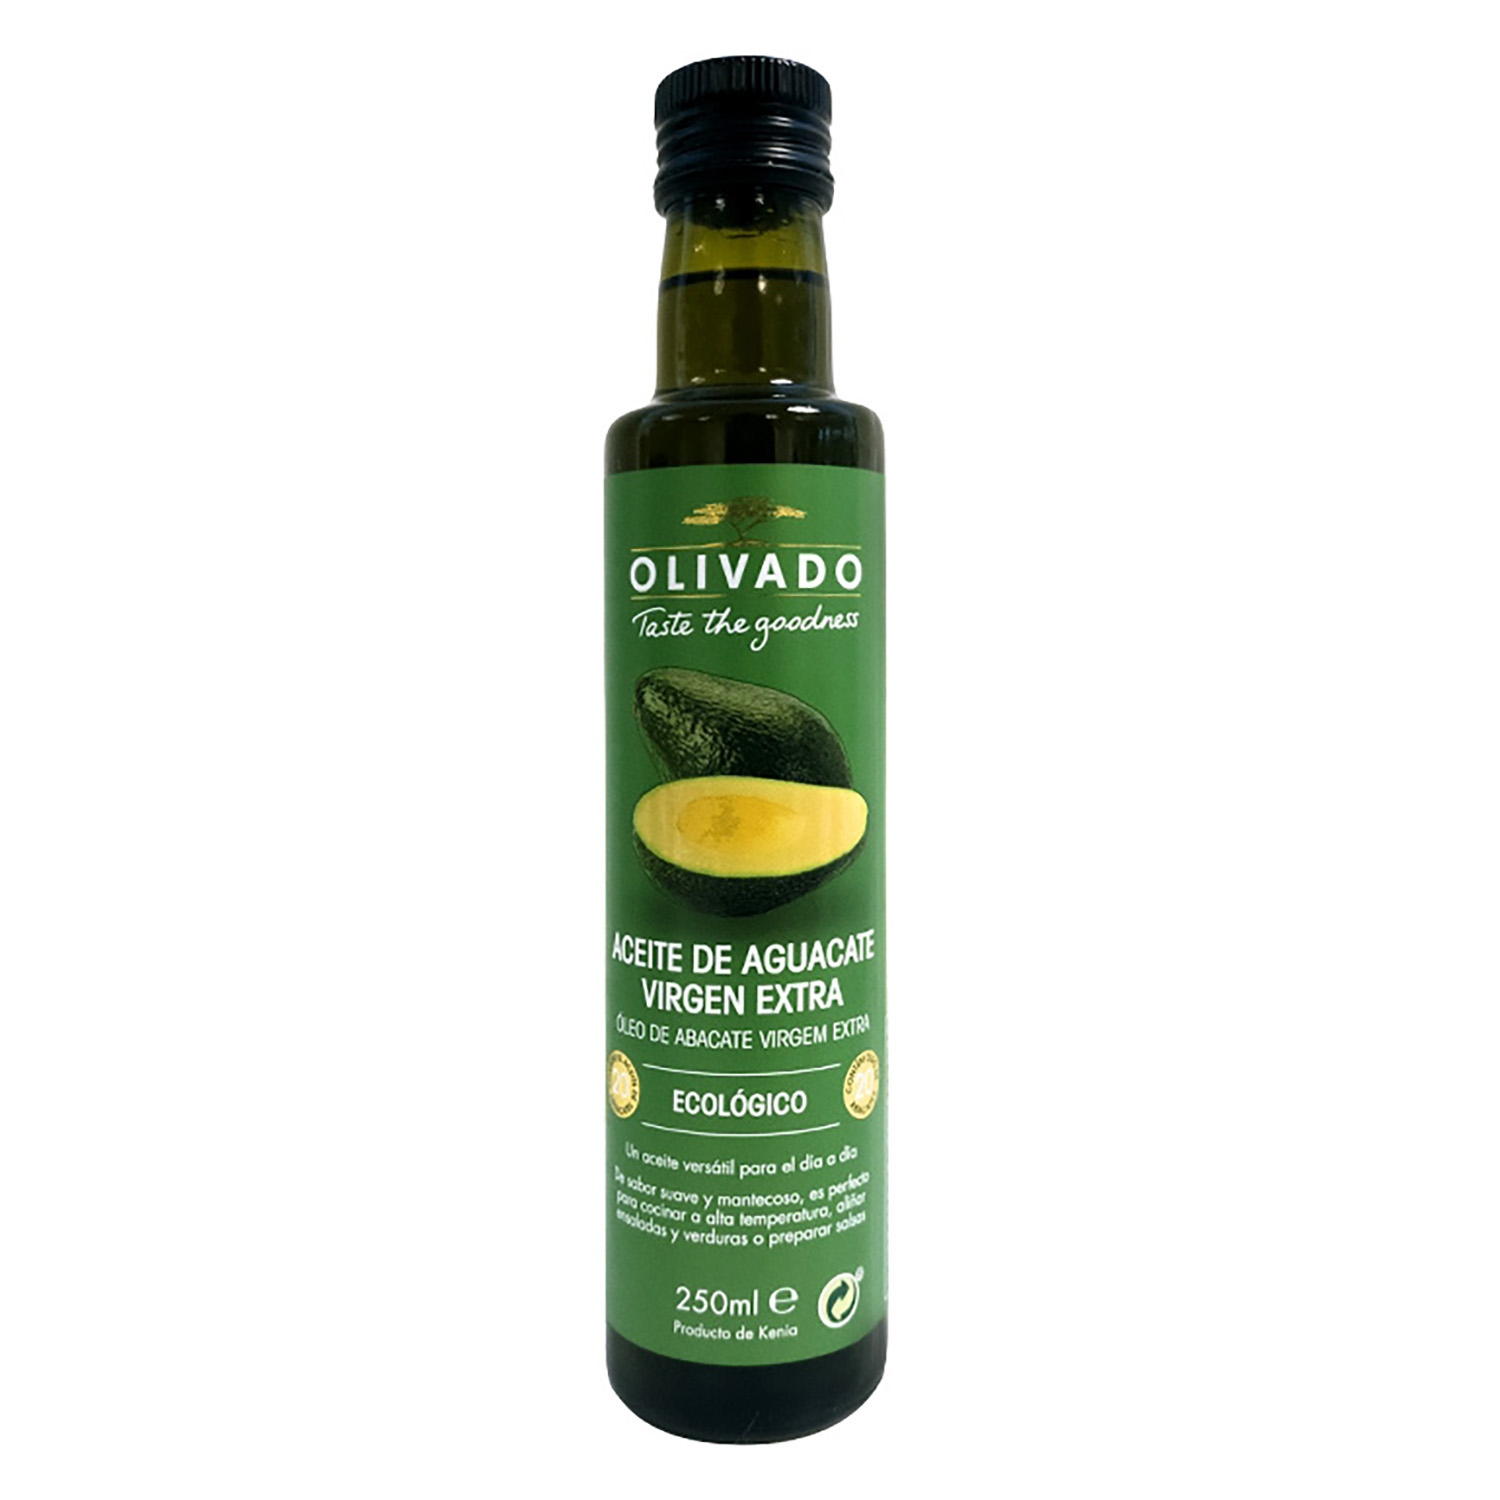 Comparativa Aceite oliva, soja y condimentos - BioFacil.es